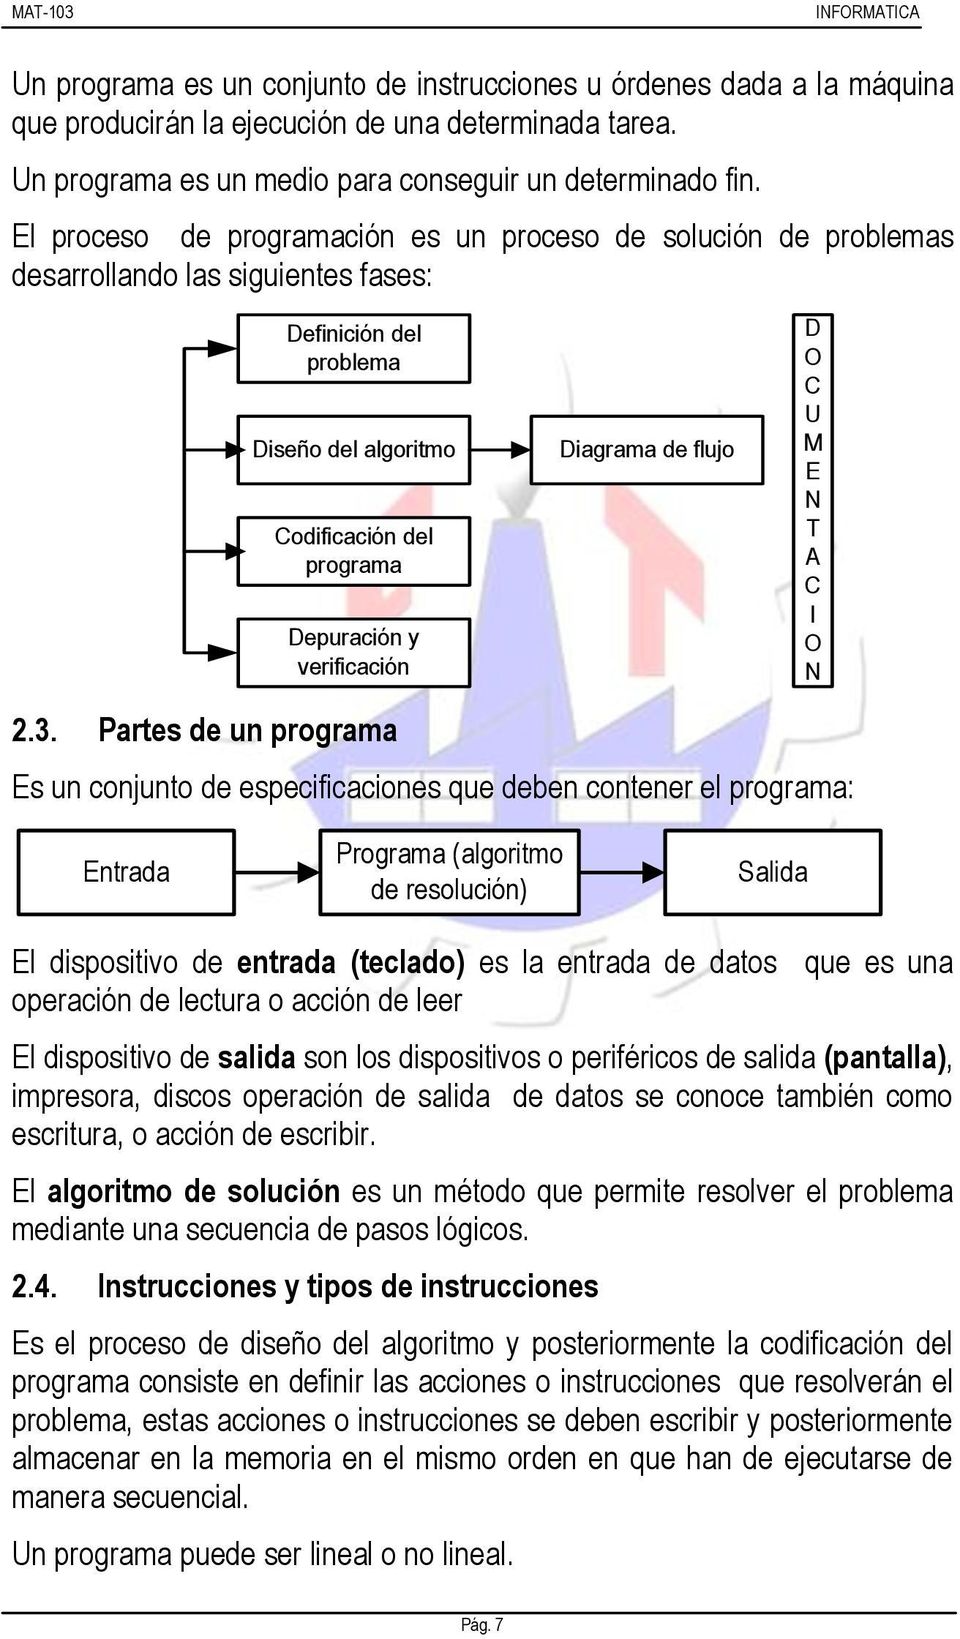 2.3. Partes de un programa Diagrama de flujo Es un conjunto de especificaciones que deben contener el programa: D O C U M E N T A C I O N Entrada Programa (algoritmo de resolución) Salida El